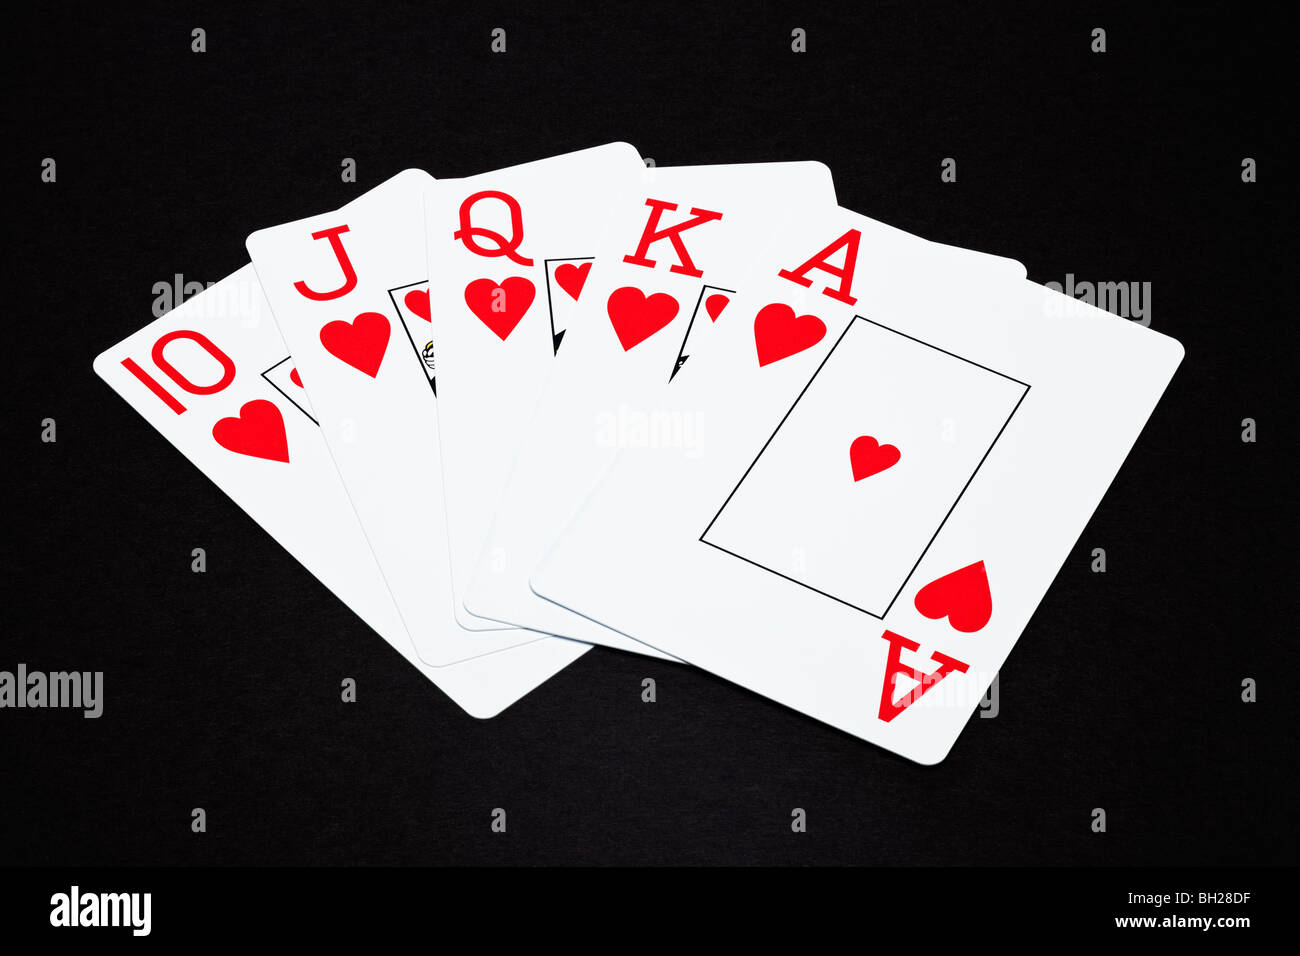 Die Karten zeigen einen Royal Flush poker Hand Stockfoto